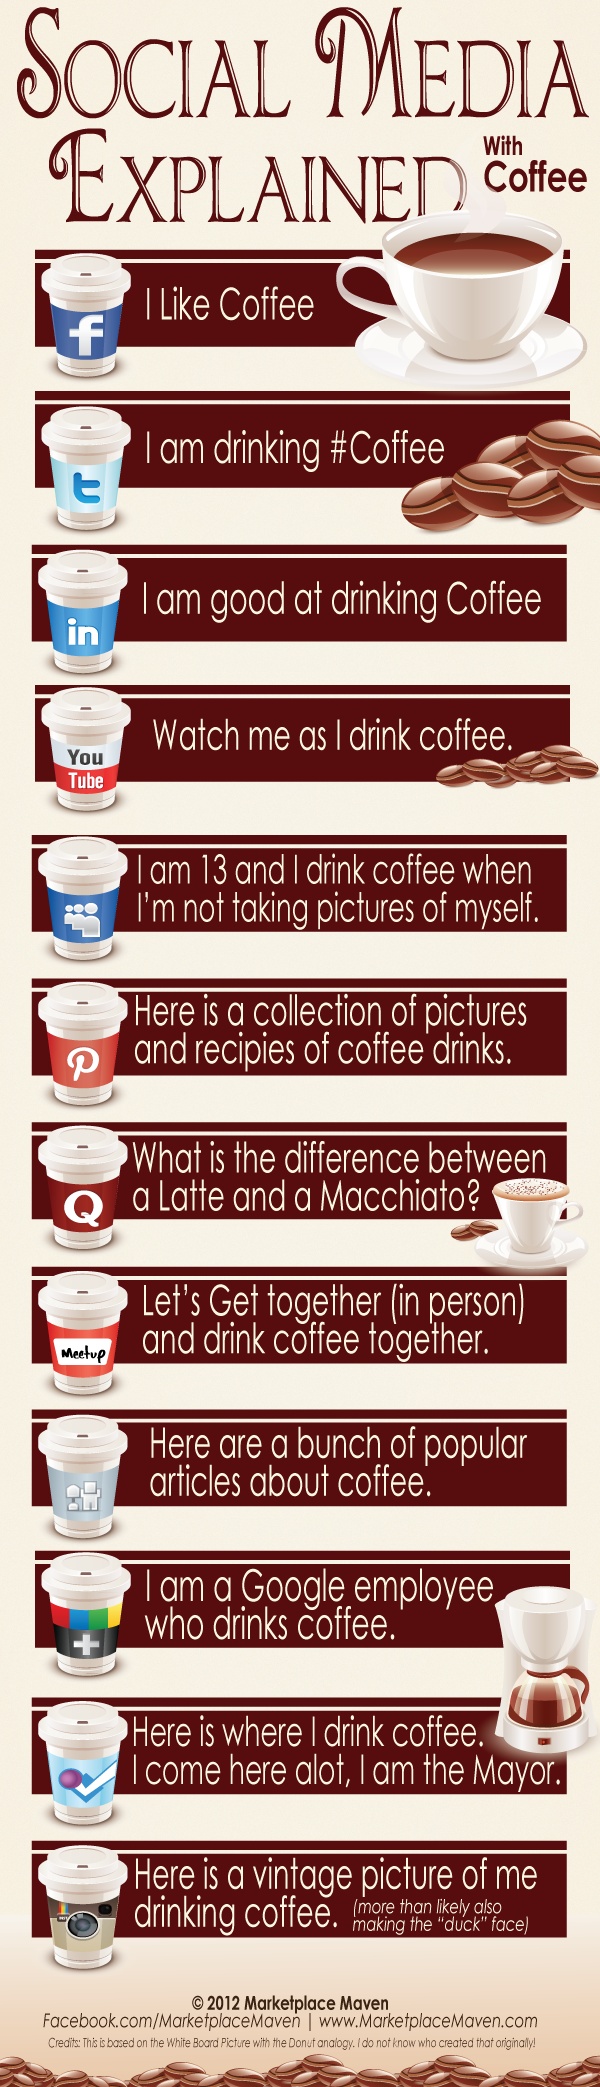 Социјалните мрежи објаснети со помош на кафето